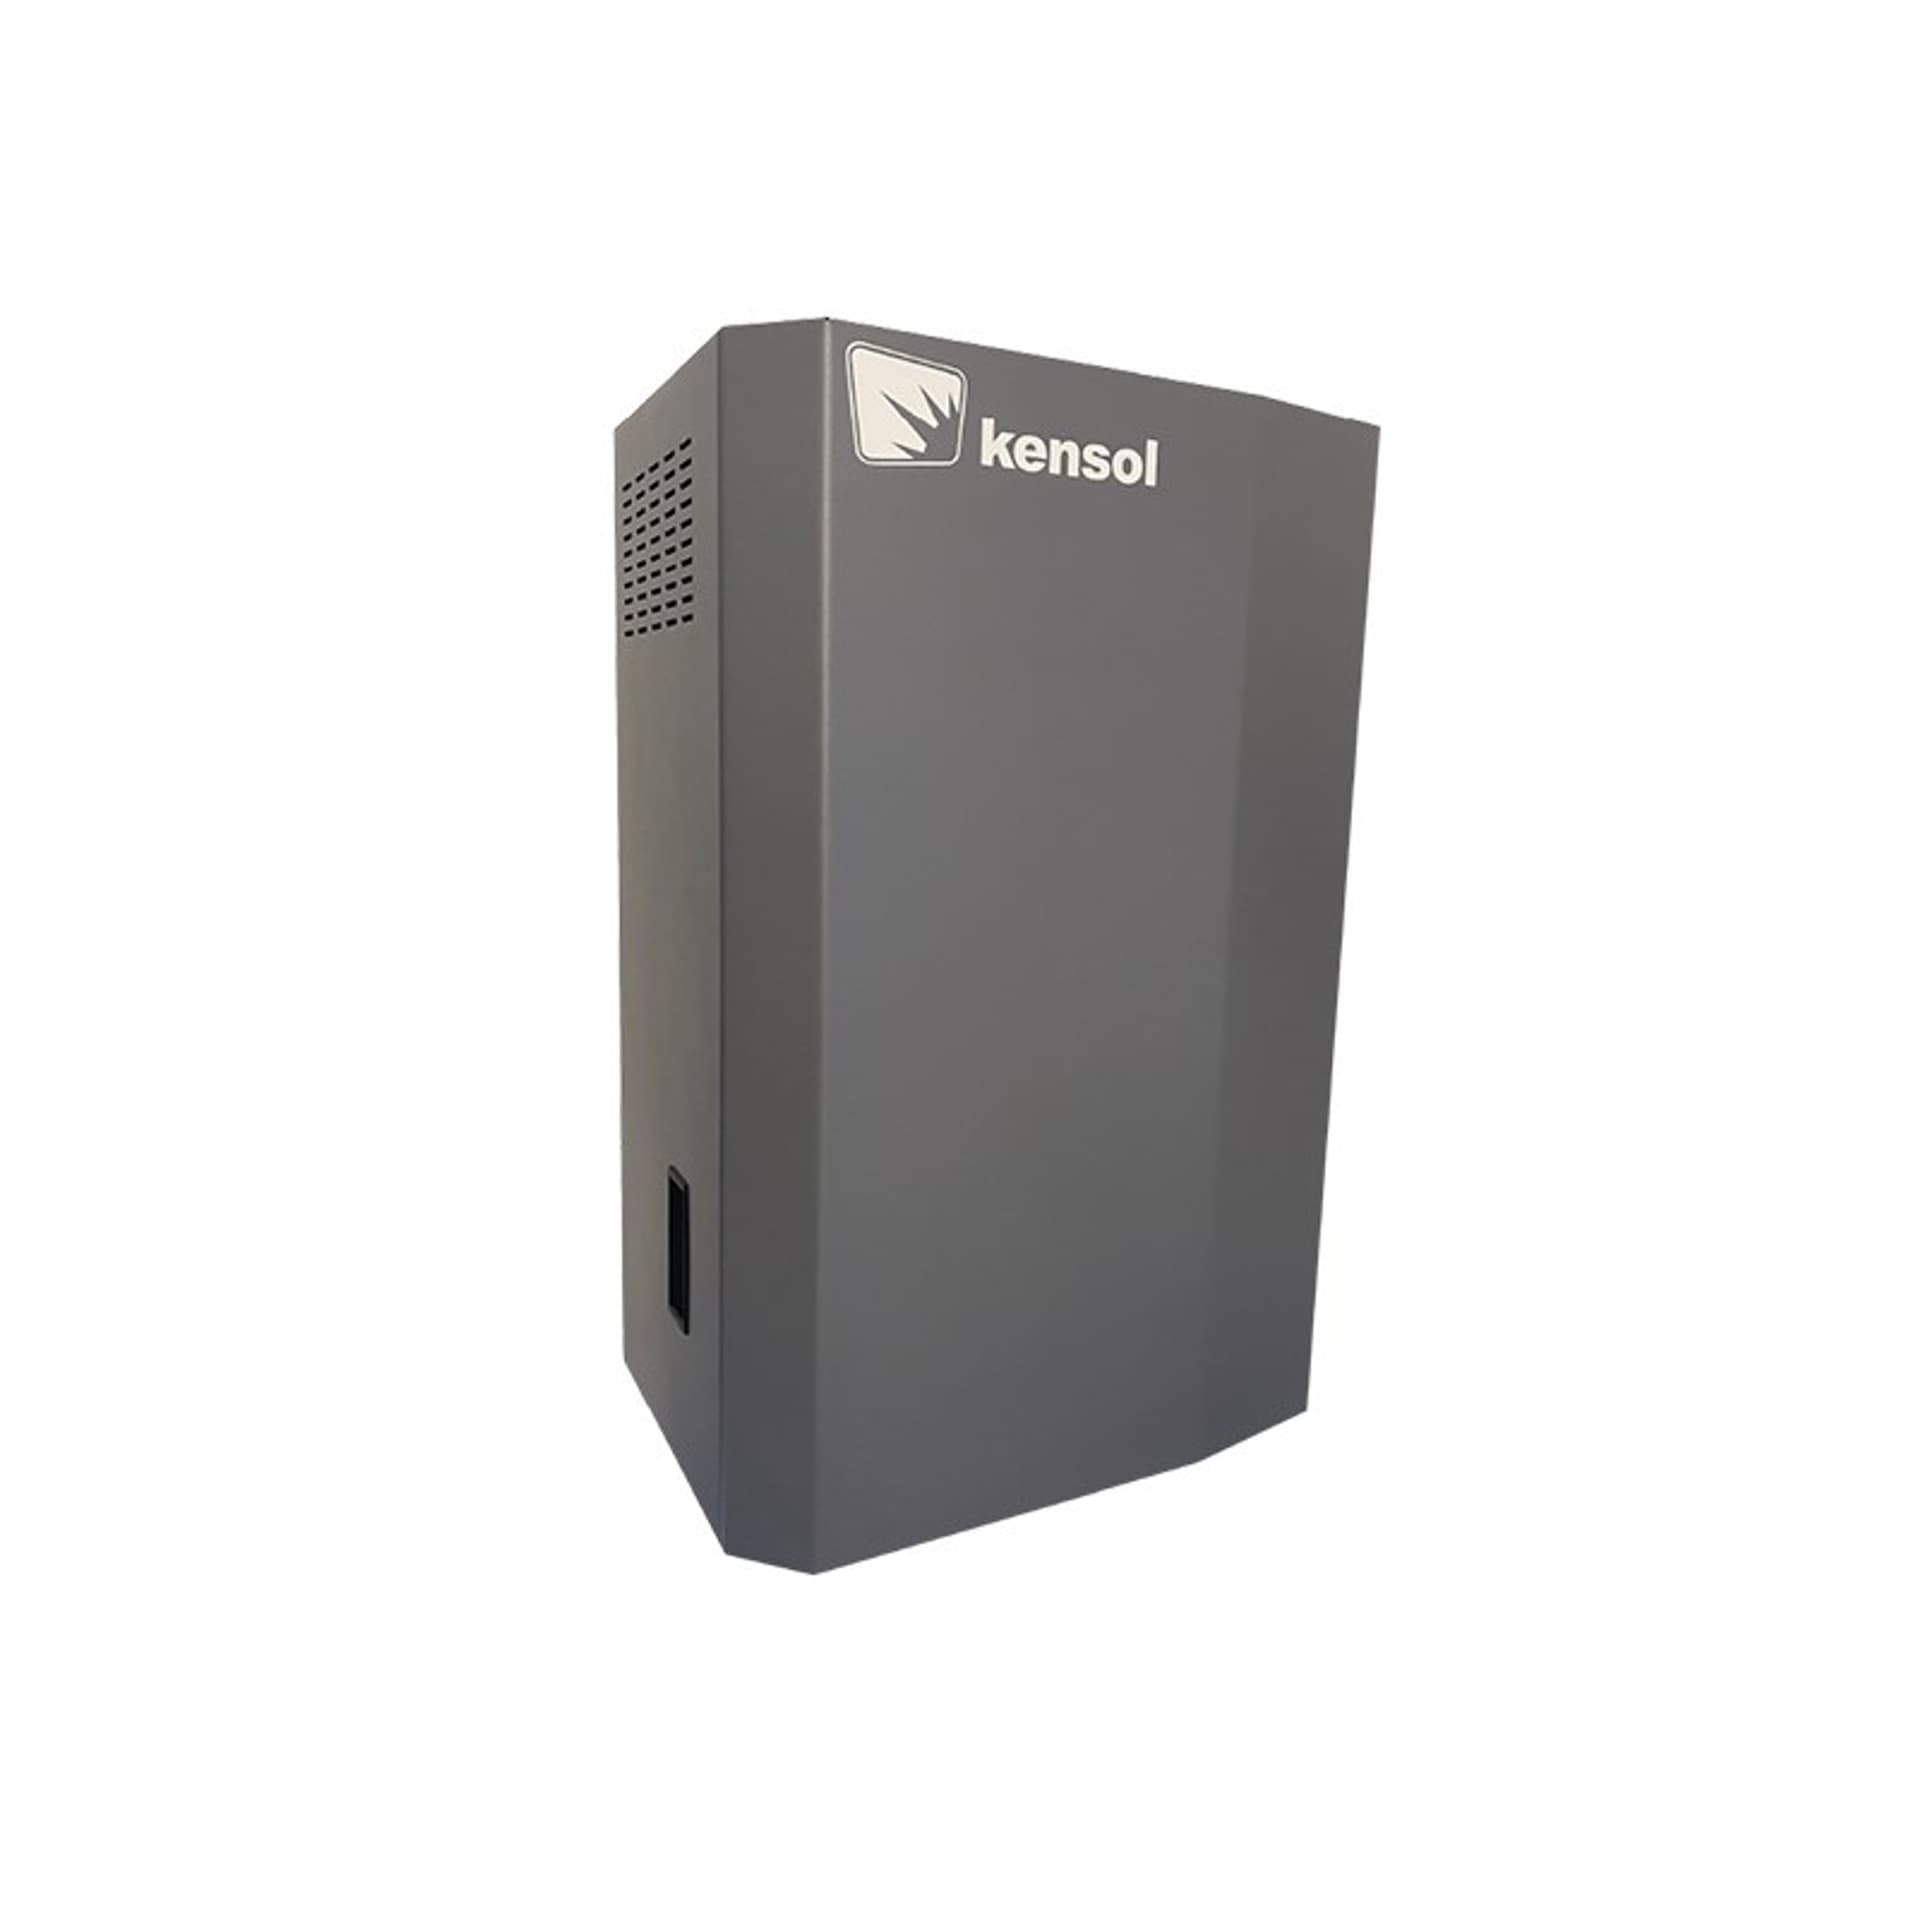 Zdjęcia - Pompa ciepła Pomp Hydrobox do  ciepła typu monoblok Kensol  (Haier, LG, FoxAIR, Kensol)